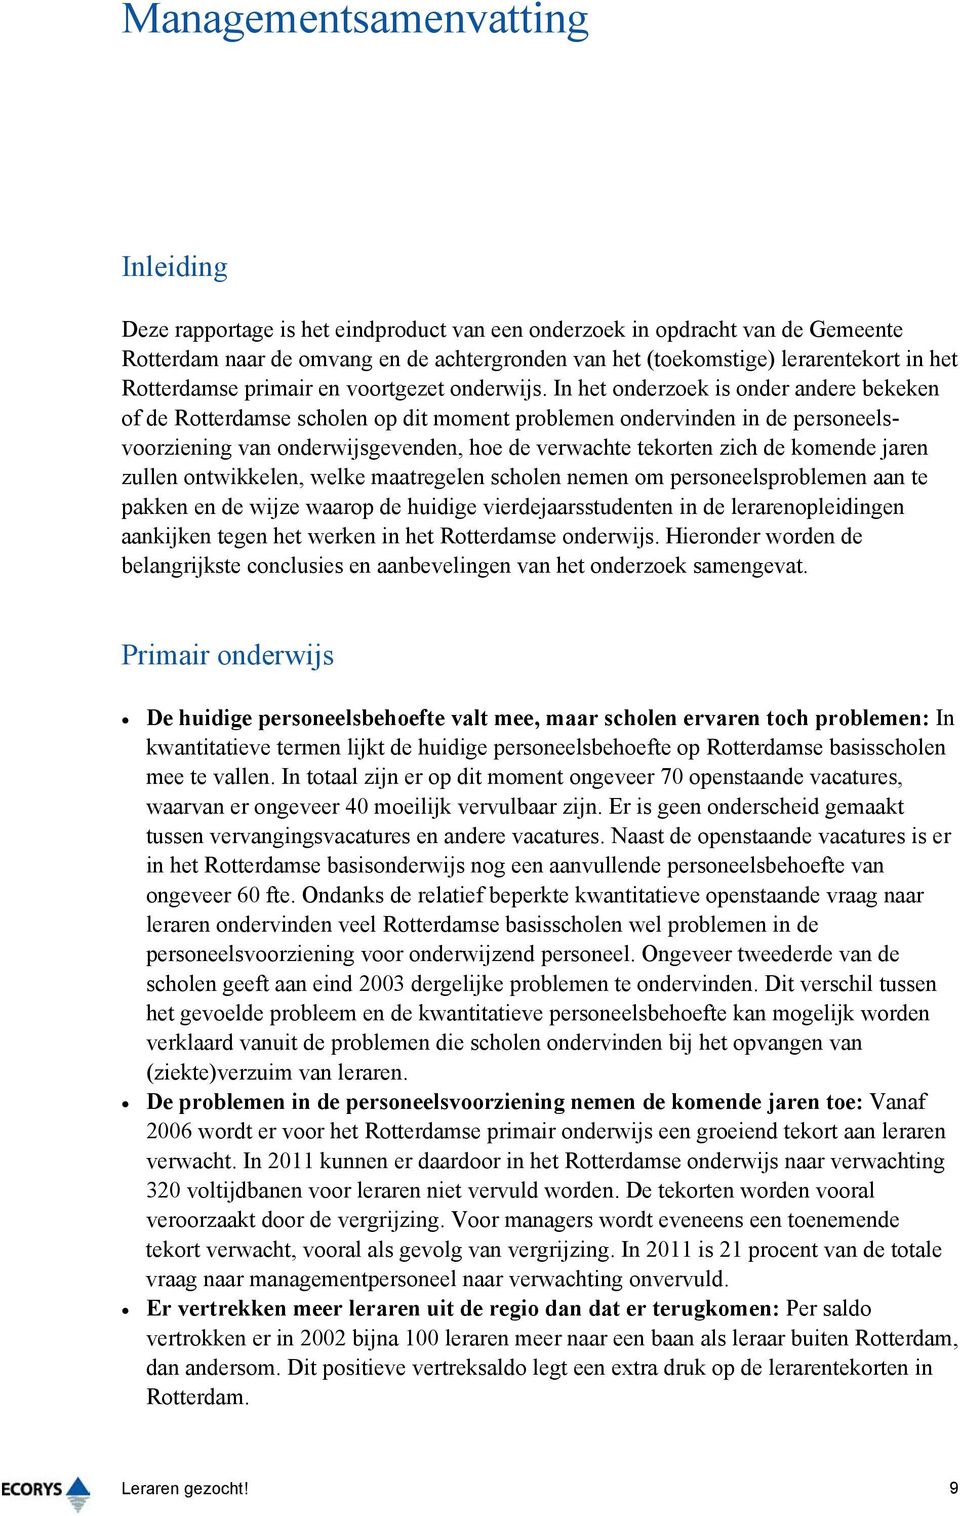 In het onderzoek is onder andere bekeken of de Rotterdamse scholen op dit moment problemen ondervinden in de personeelsvoorziening van onderwijsgevenden, hoe de verwachte tekorten zich de komende